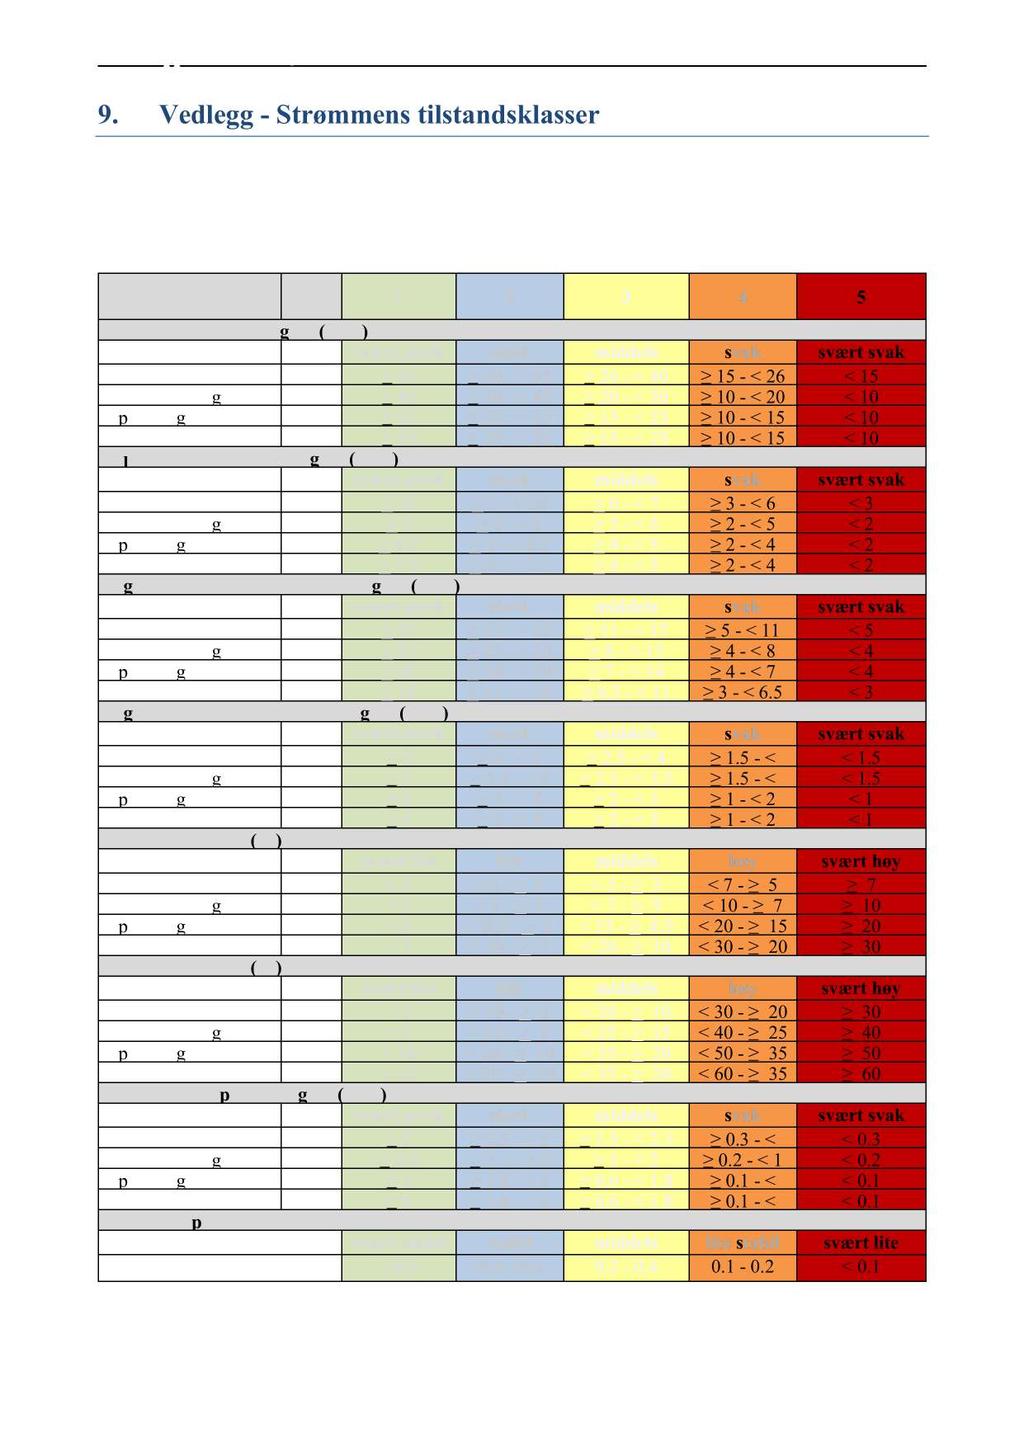 9. Vedlegg - Strøm mens tilstandsklasser T ilstandsklasser for strømparameterer oppgitt i Tabell 9. 1. V erdier er tatt fra Åkerblå s innsamlede data ved bruk av Aanderaa punkmålere ( Åkerblå, 2015).